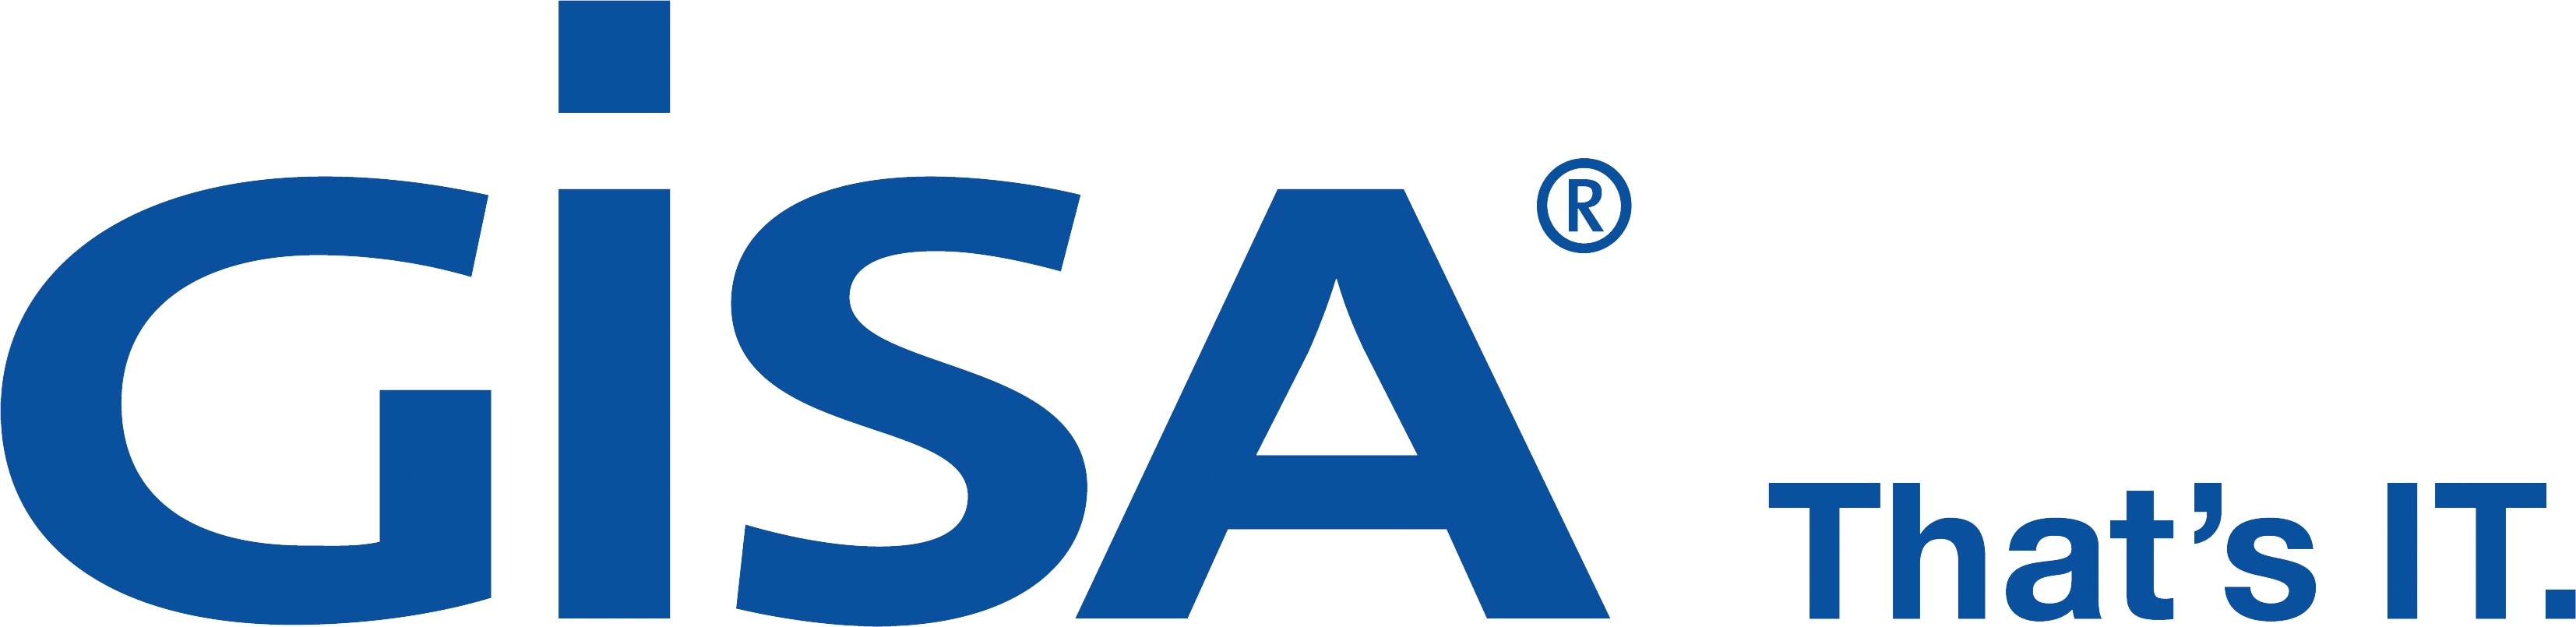 GISA-Logo-Blau_RGB_Claim-rechts